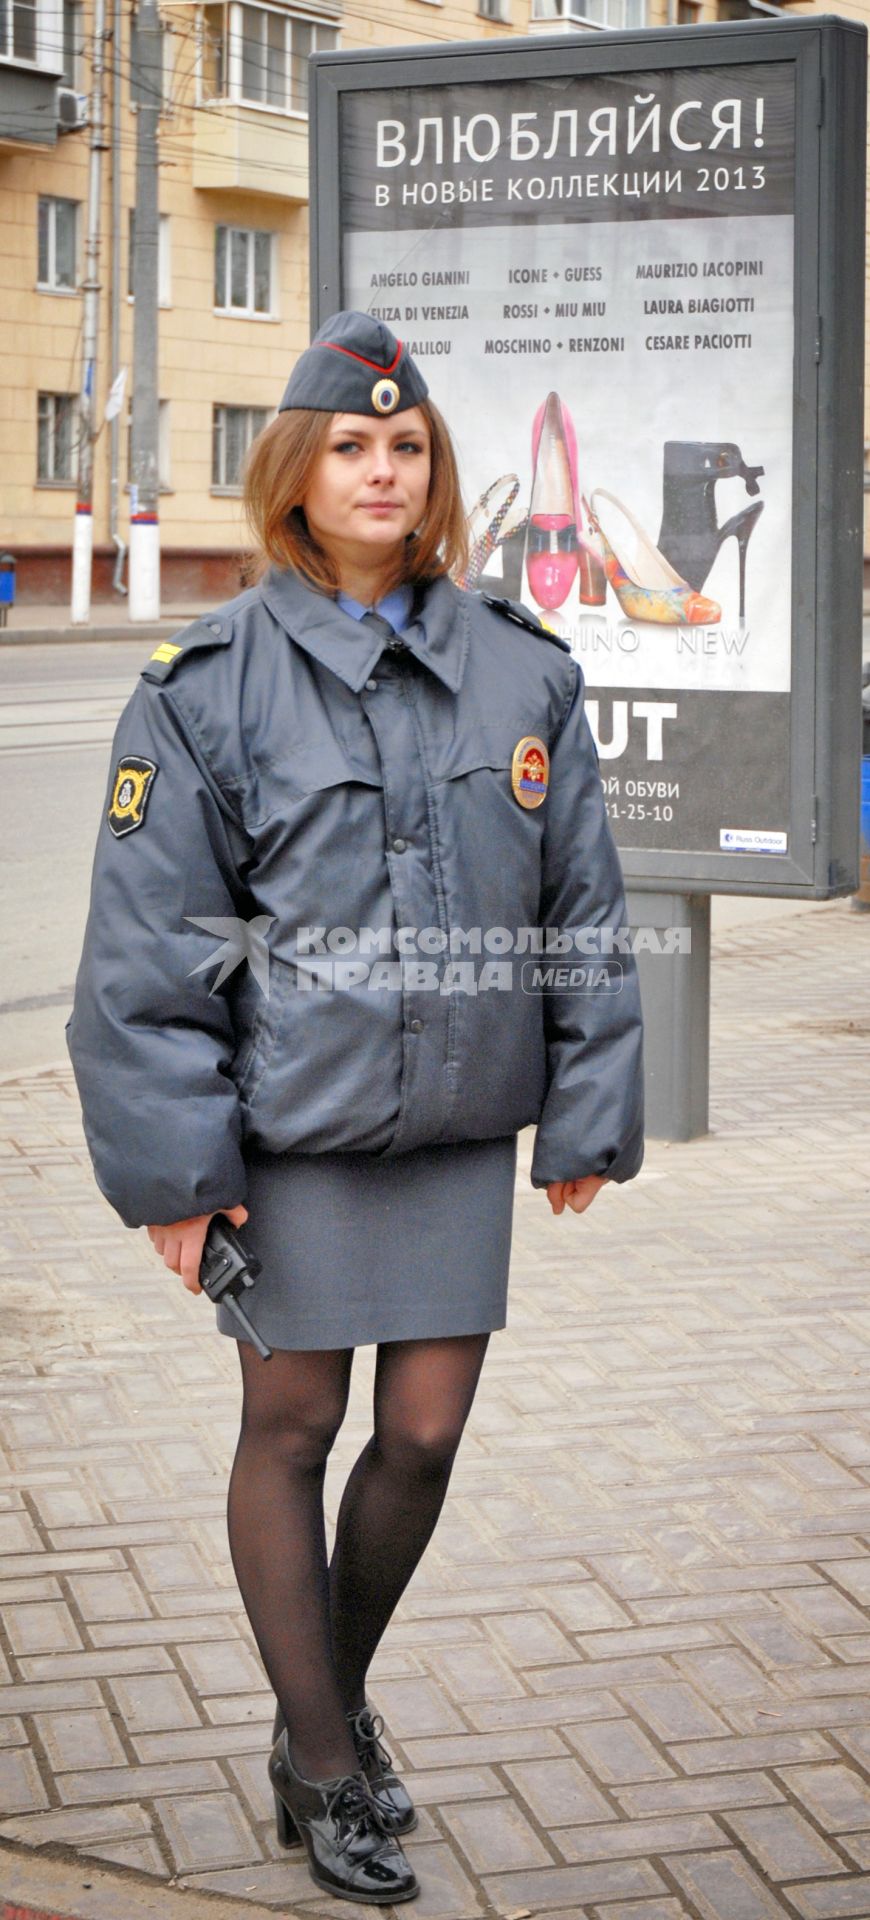 Женщина полицейский стоит на фоне плаката с надписью `Влюбляйся`.